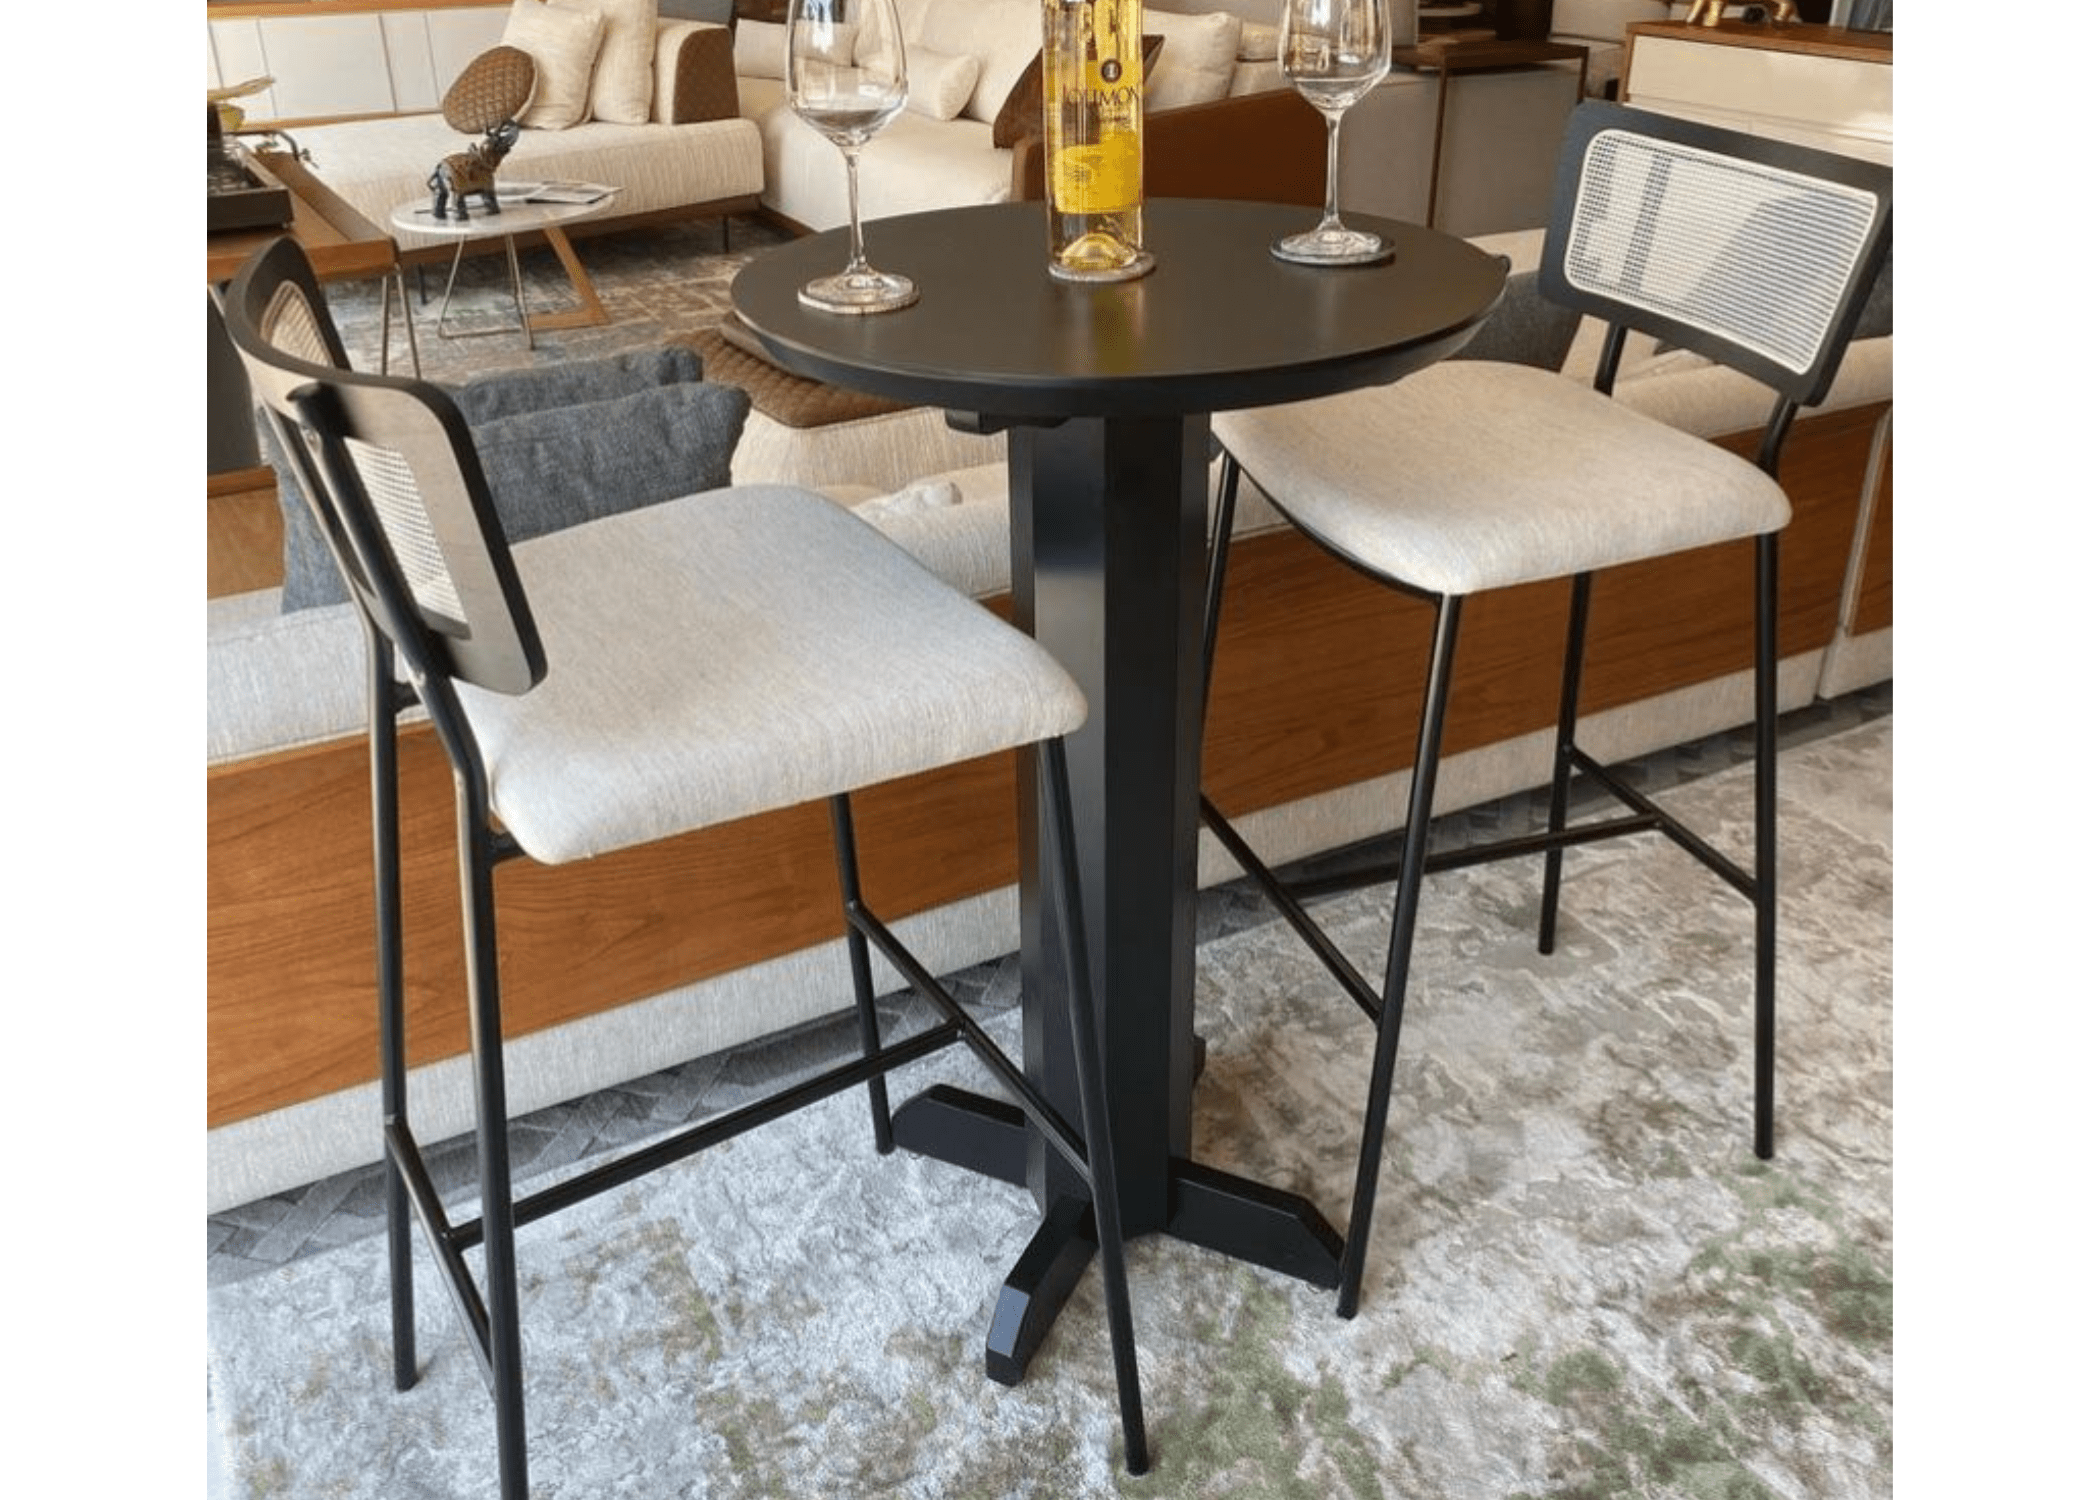 Conforto e rusticidade: assento da Banqueta Aruba em uma cozinha moderna.